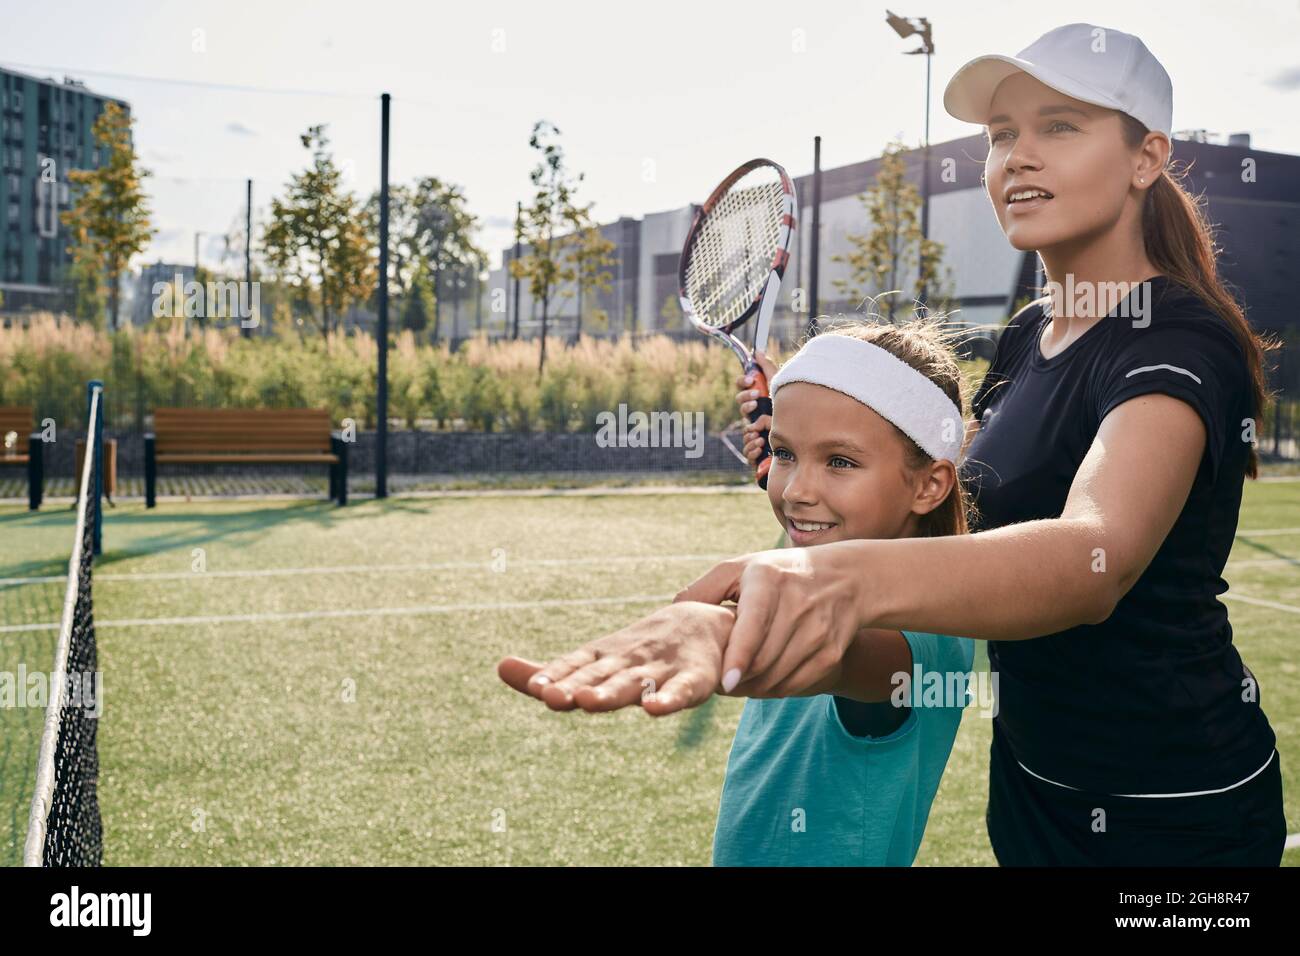 La allenatrice femminile di tennis insegna alla bambina a giocare a tennis sul campo d'erba. Lezione di tennis per un bambino Foto Stock